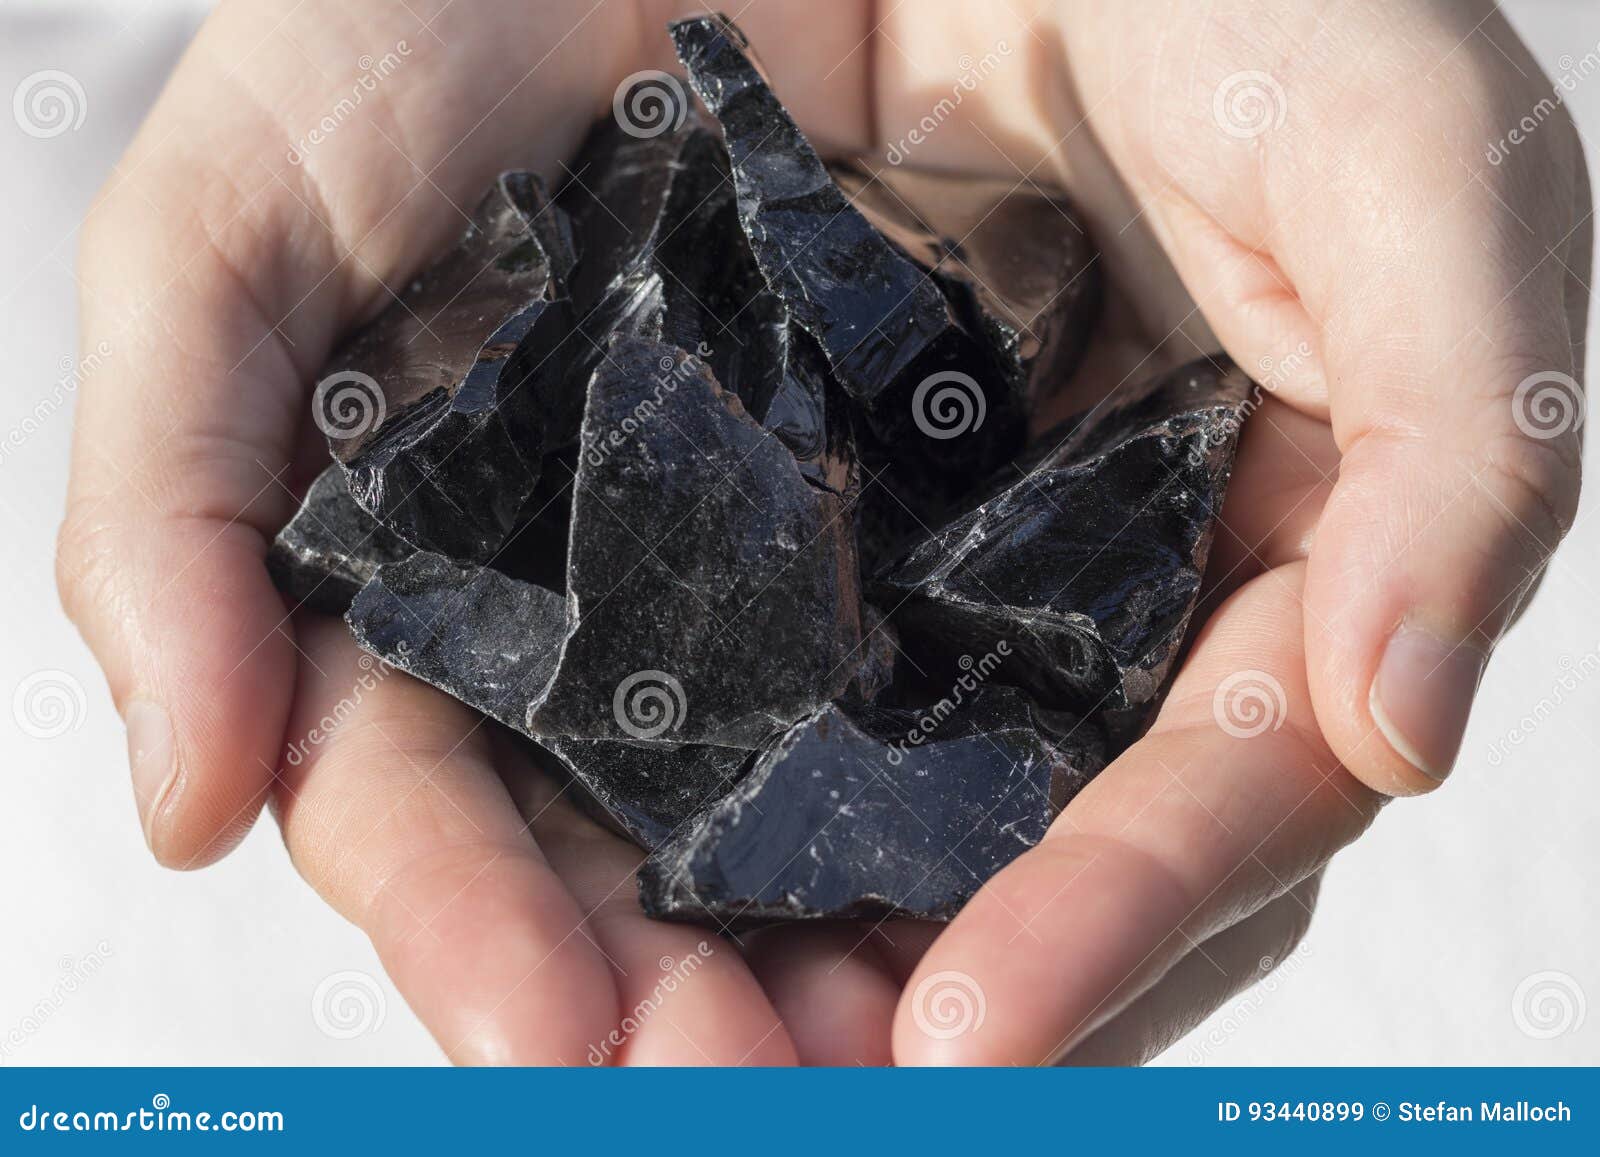 hands holding black obsidian